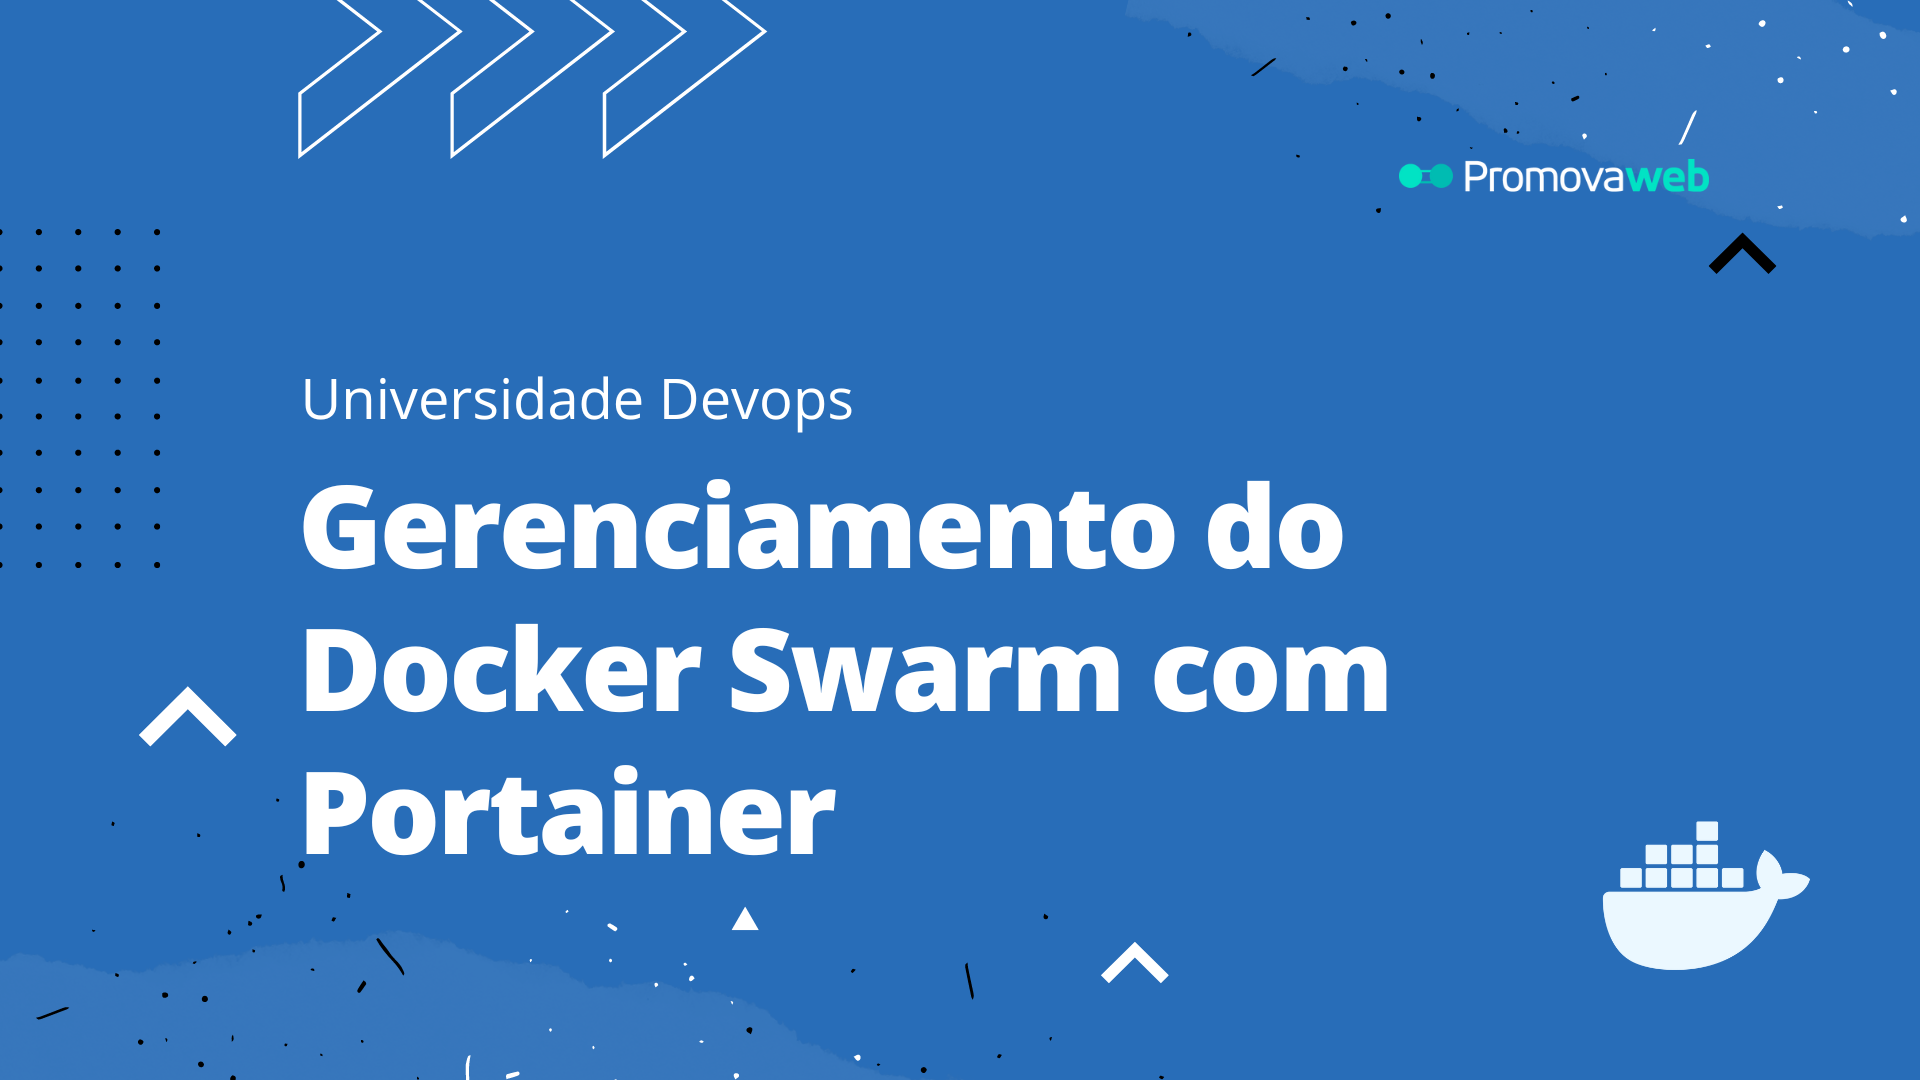 Gerenciamento do Docker Swarm com Portainer